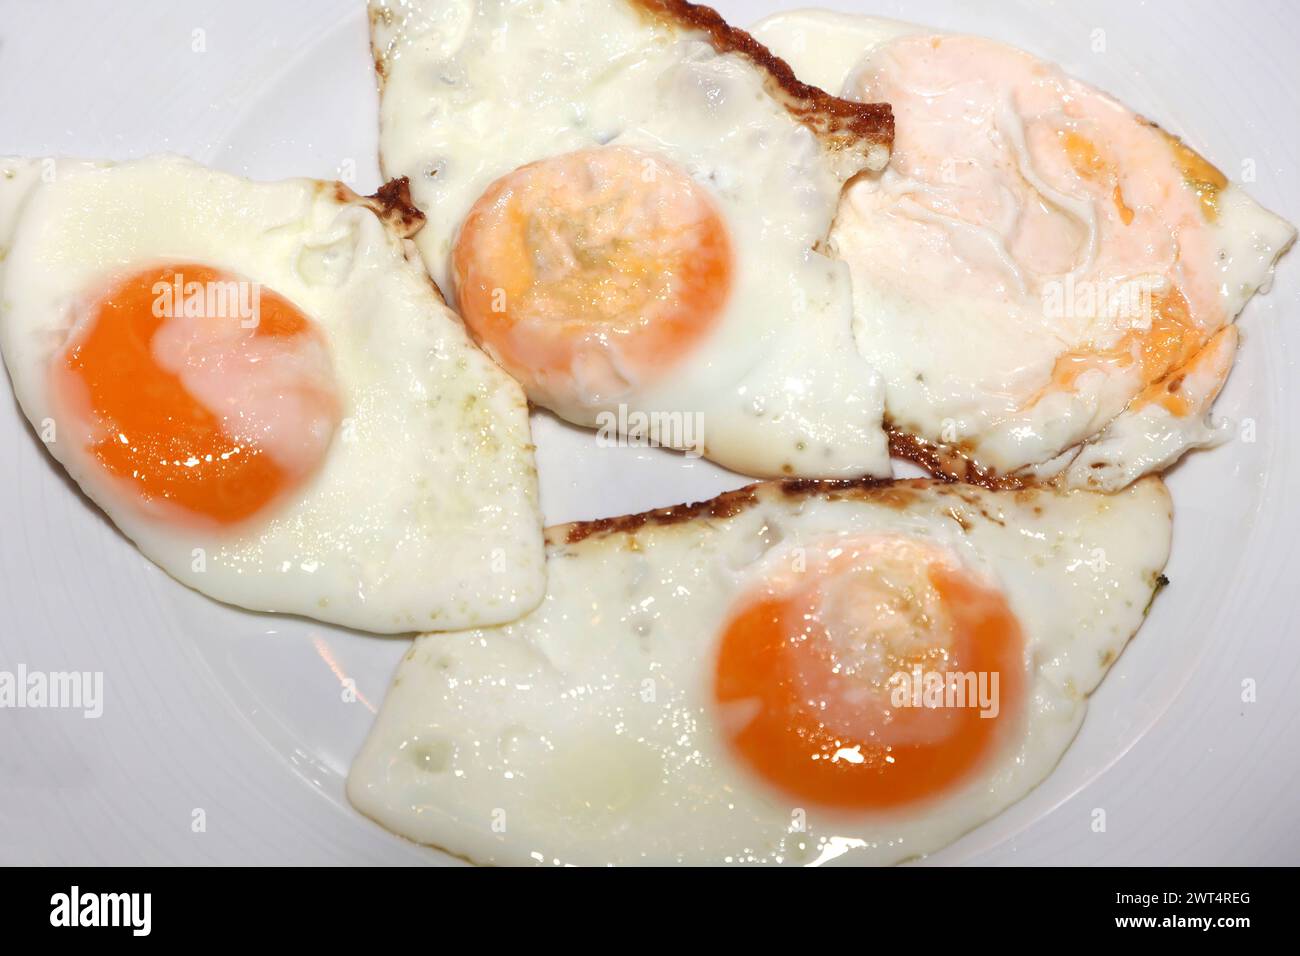 Spiegeleier als schnelle Mahlzeit Spiegeleier liegen fertig zubereitet auf einem Teller. *** Fried eggs as a quick meal Fried eggs are ready-prepared on a plate Stock Photo